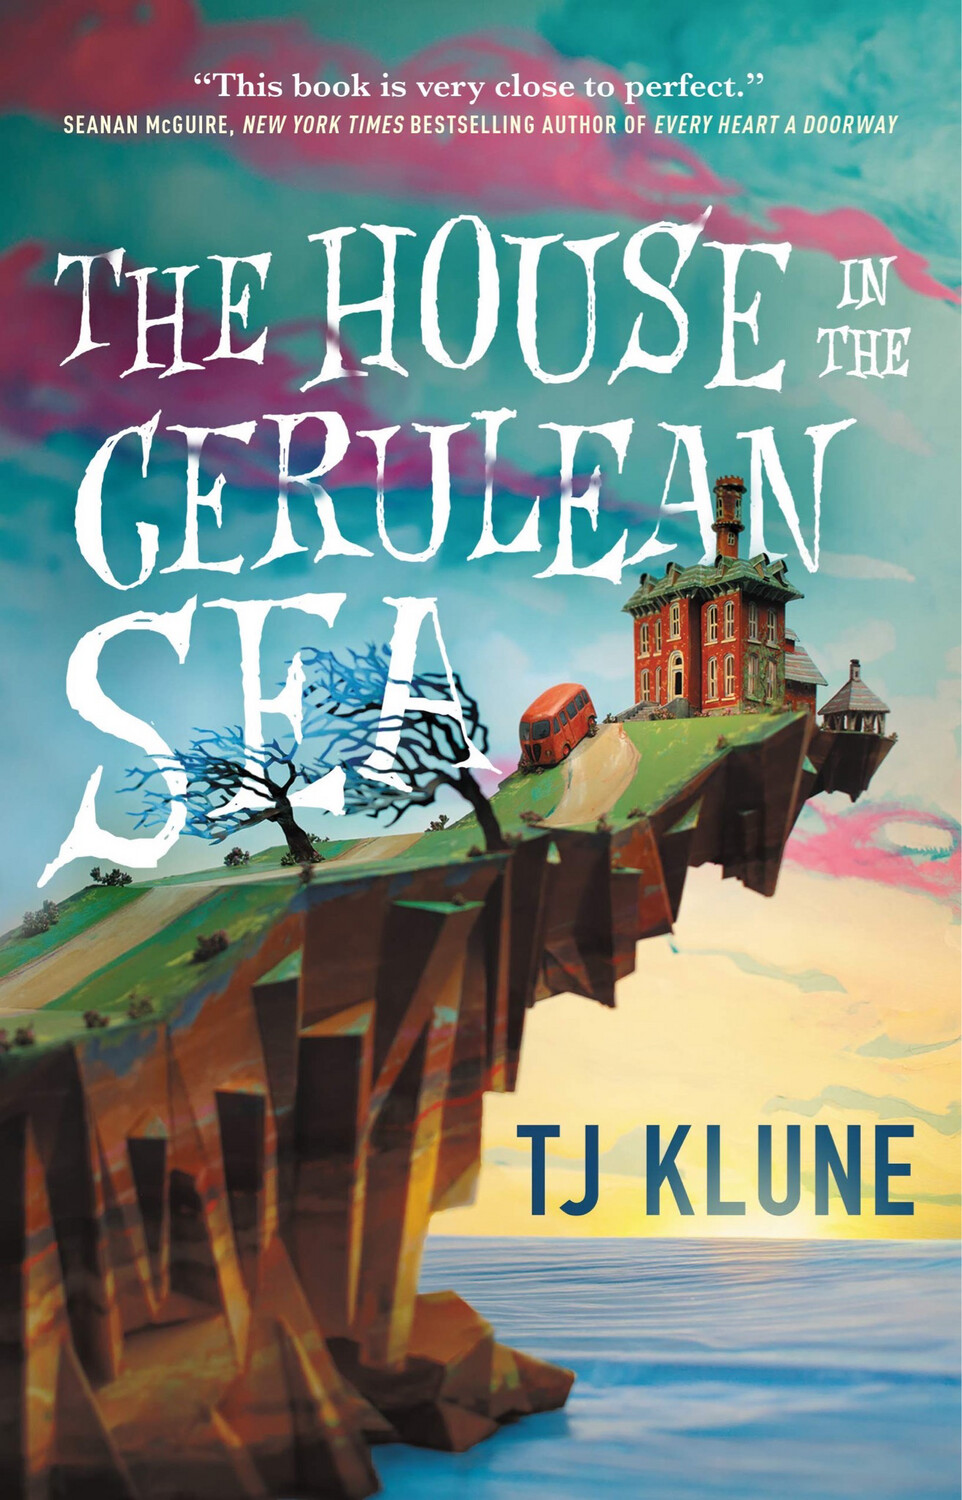 The House in the Cerulean Sea
Libro de TJ Klune
